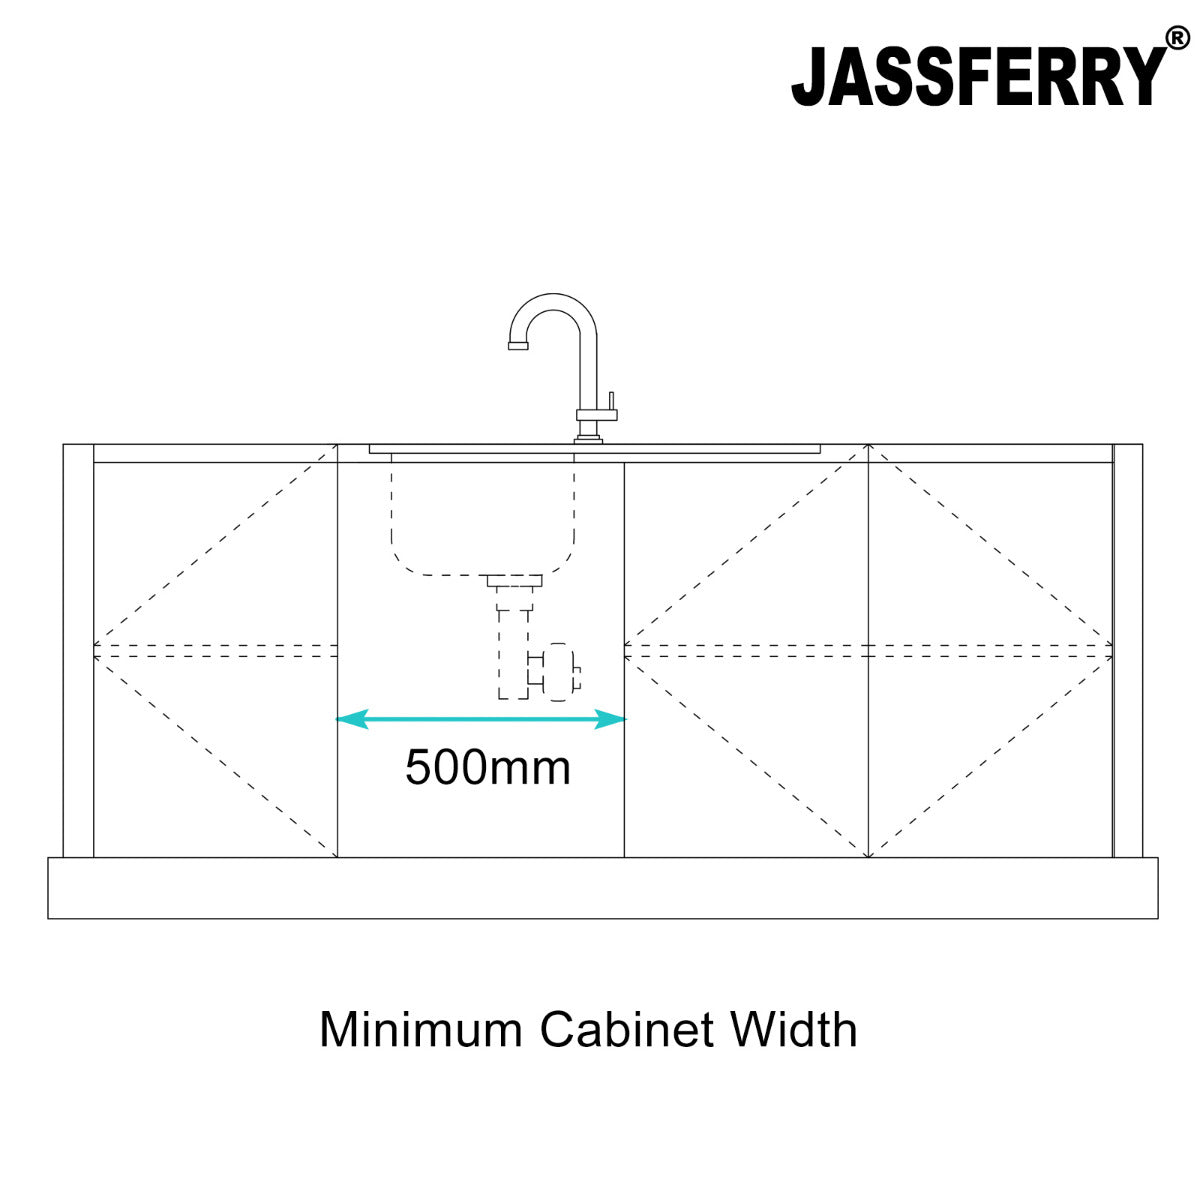 JassferryJASSFERRY Stainless Steel Kitchen Sink Inset Single 1 Bowl 860 x 500 mm Reversible Drainer - 802Kitchen Sinks